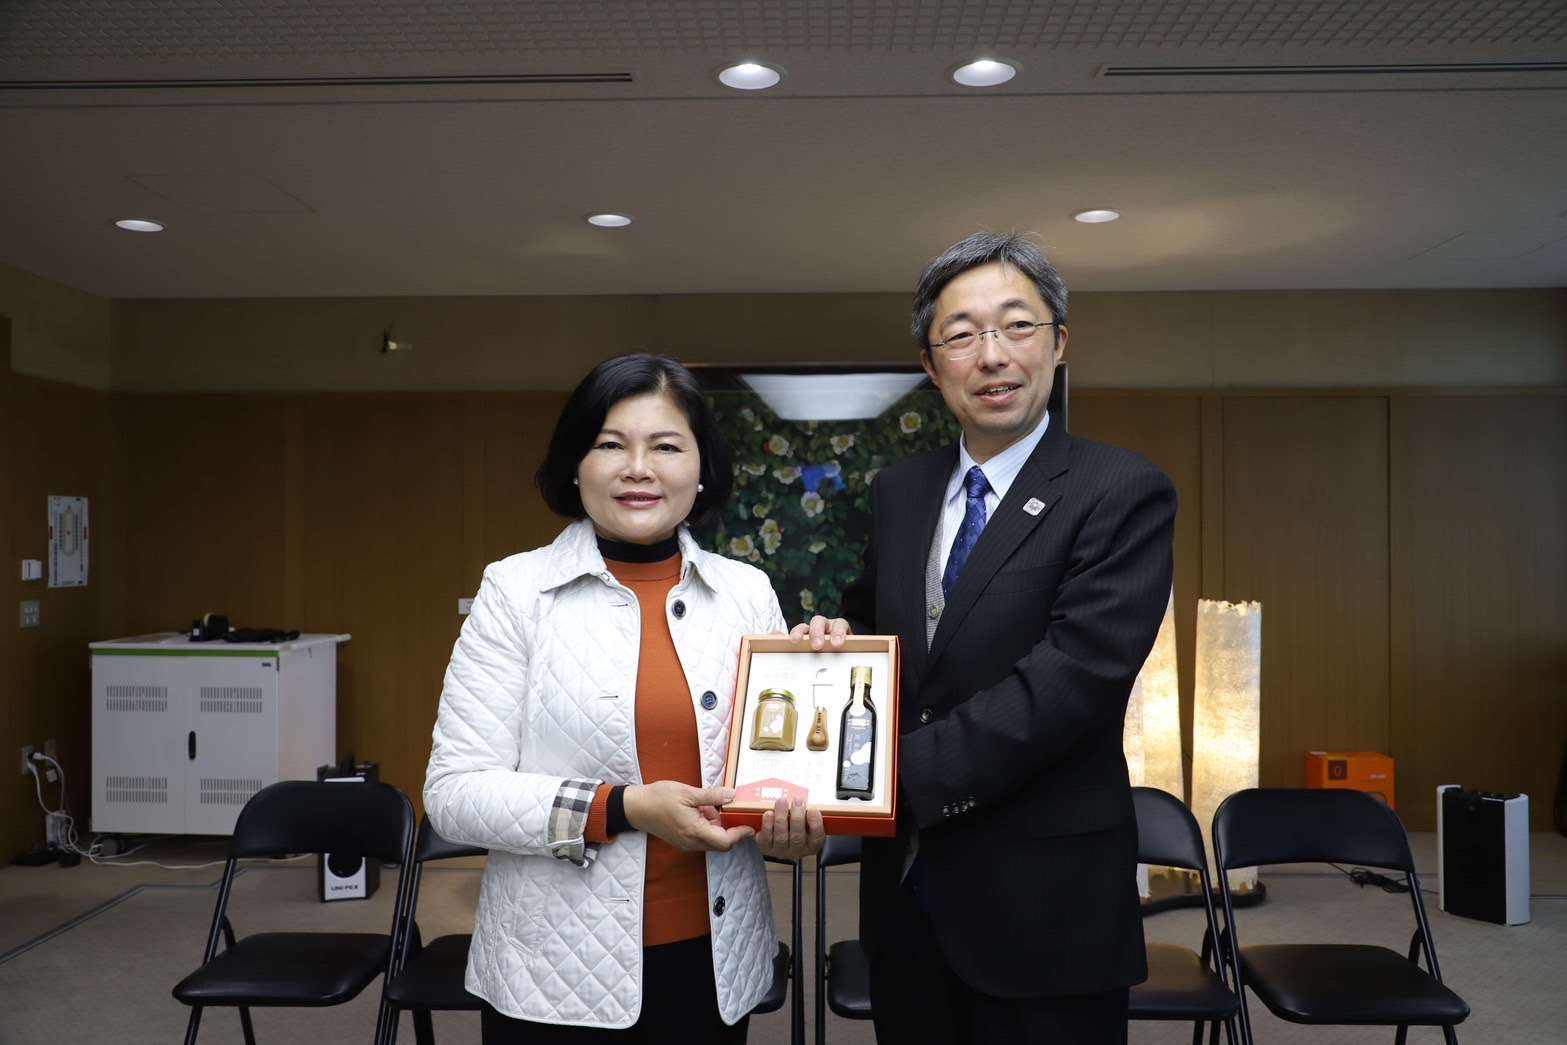 恭賀曾與張麗善縣長會晤的木村敬先生當選新任熊本縣知事